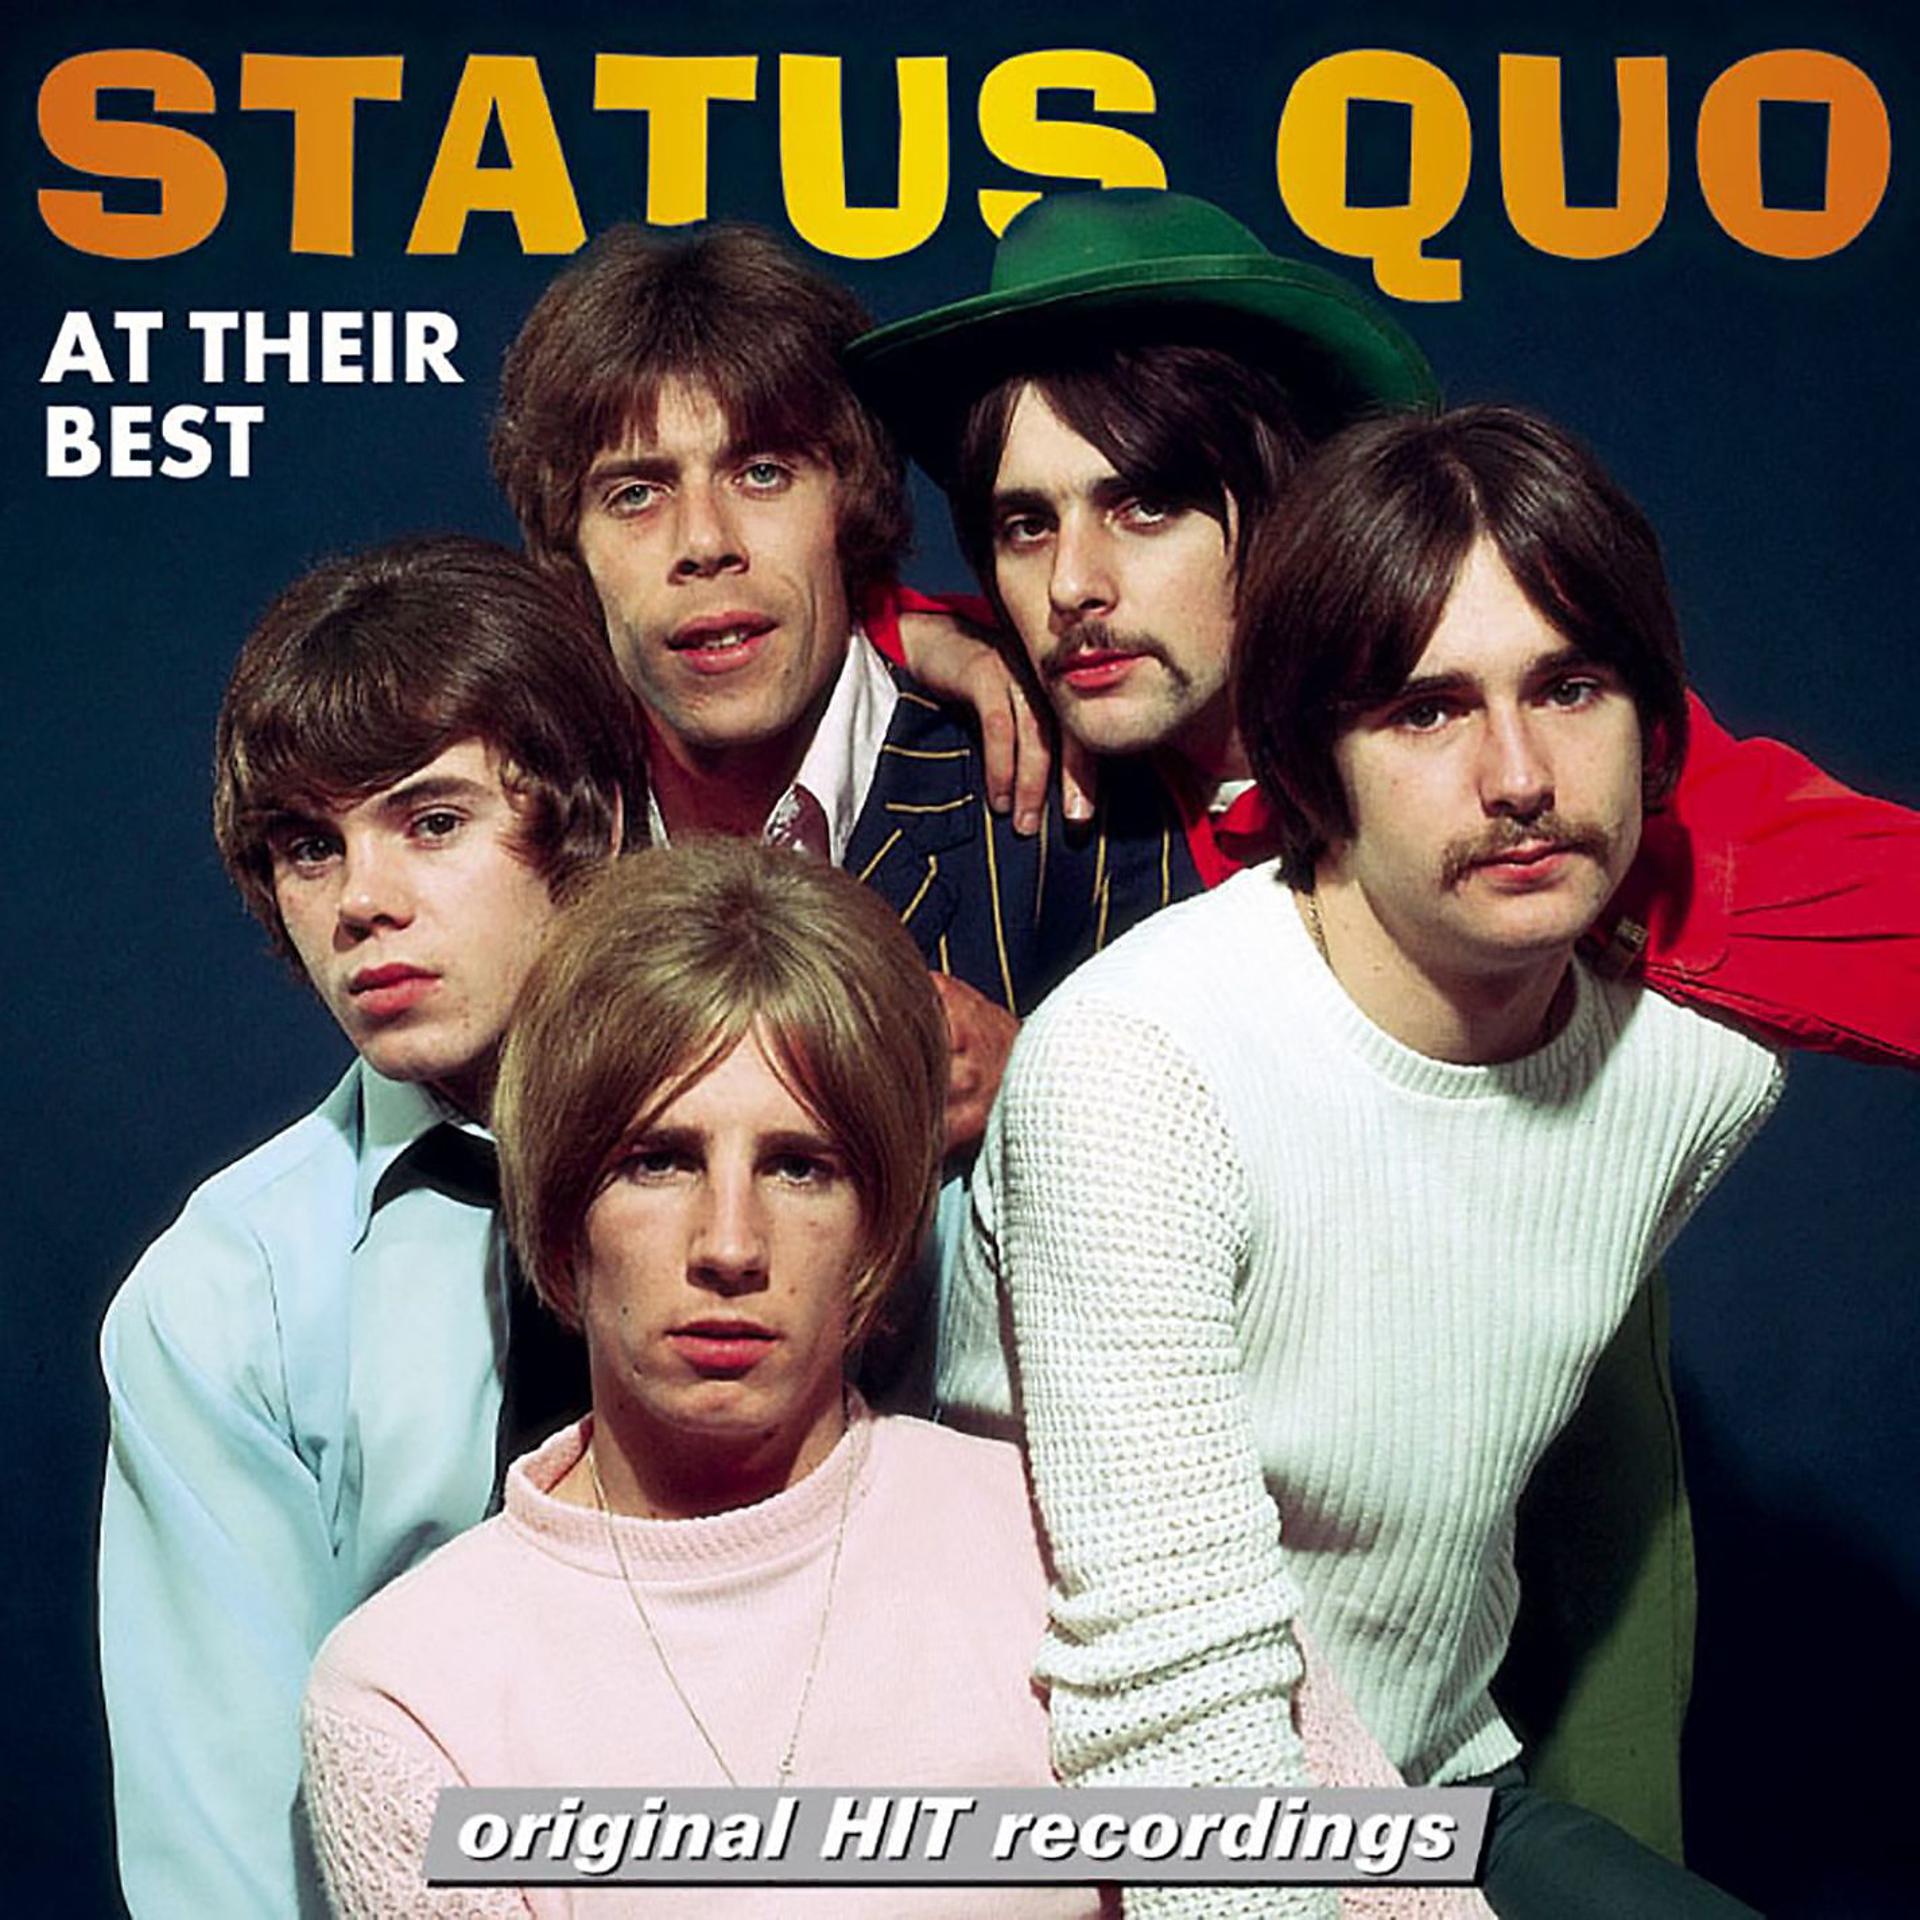 Статус групп википедия. Группа status Quo. Status Quo фото группы. Группа status Quo альбомы. Статус кво это.